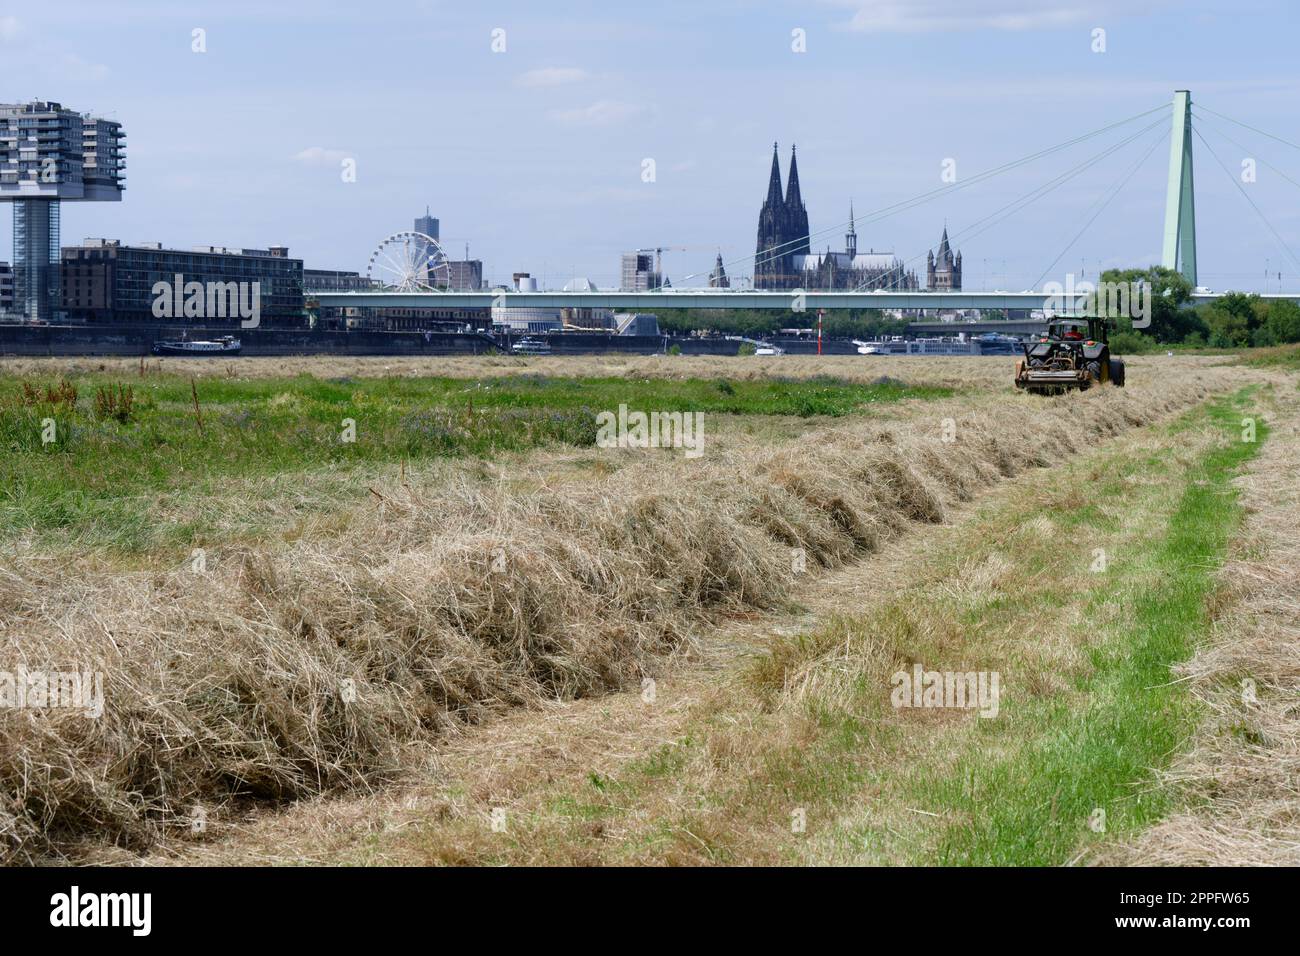 lavori agricoli nel centro di una grande città a poller wiesen, nella vicina cattedrale di colonia Foto Stock